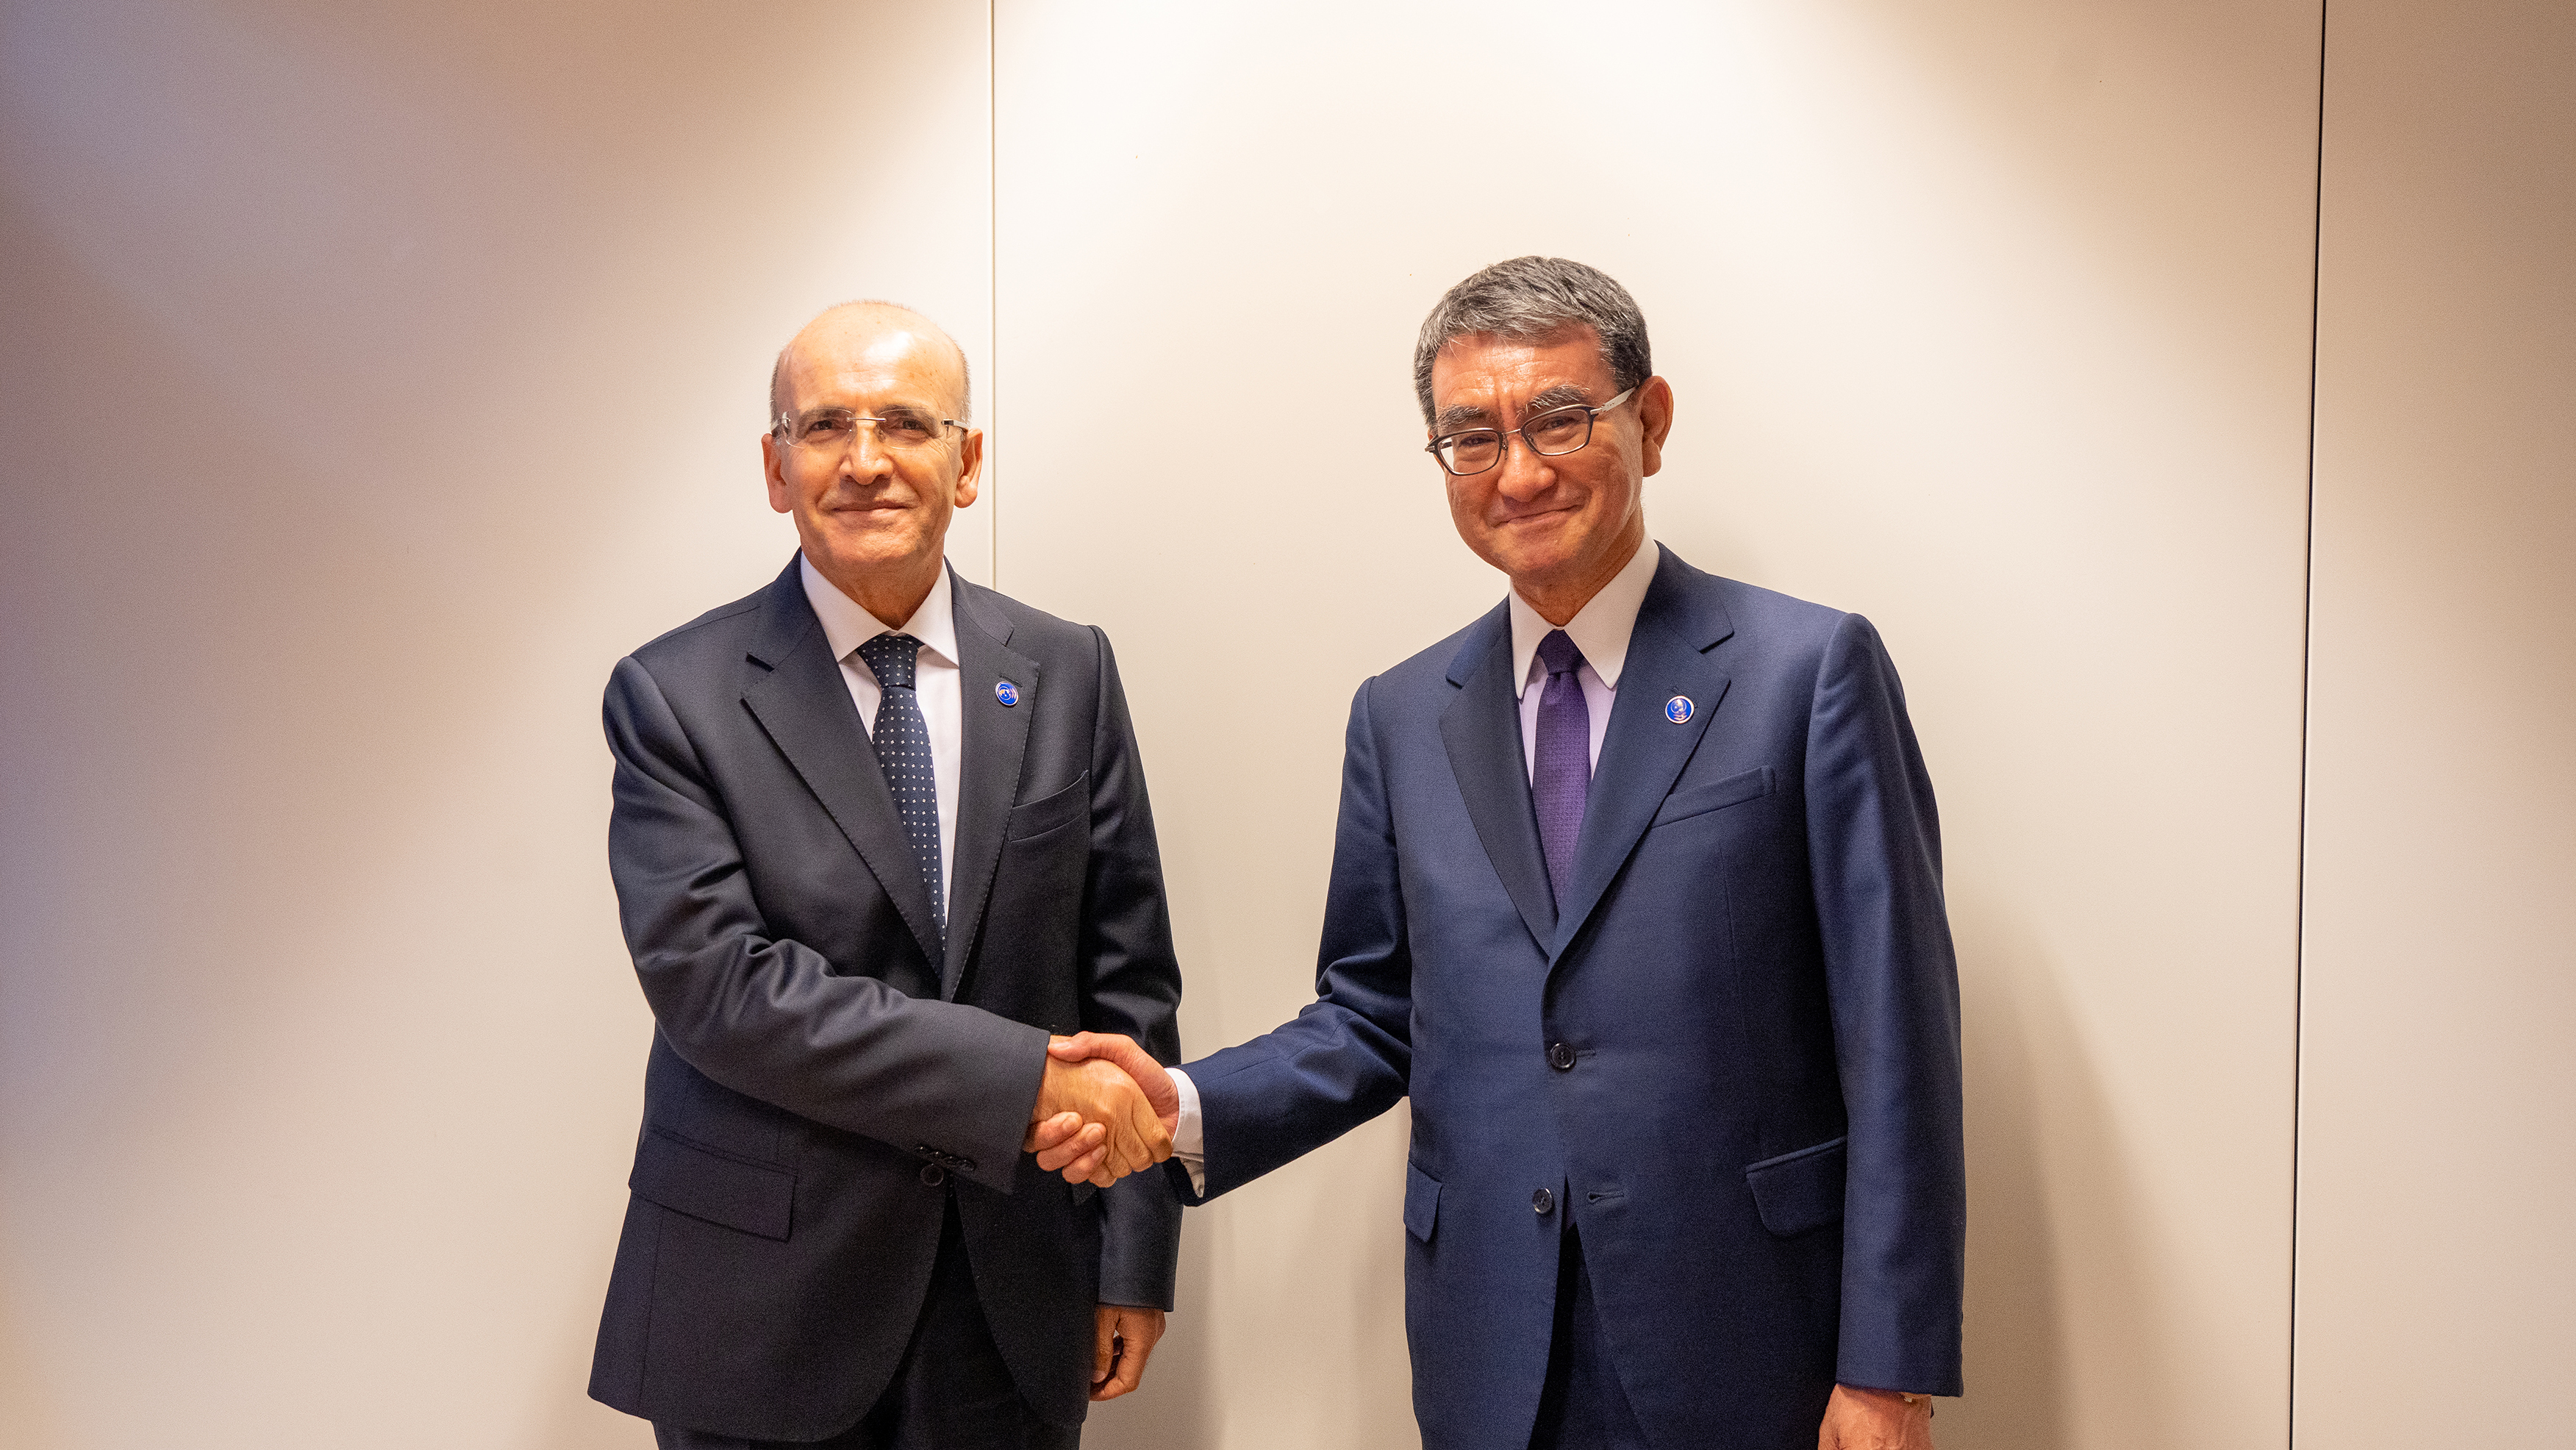 Meeting with Mr. Mehmet Şimşek, the Minister of Treasury and Finance